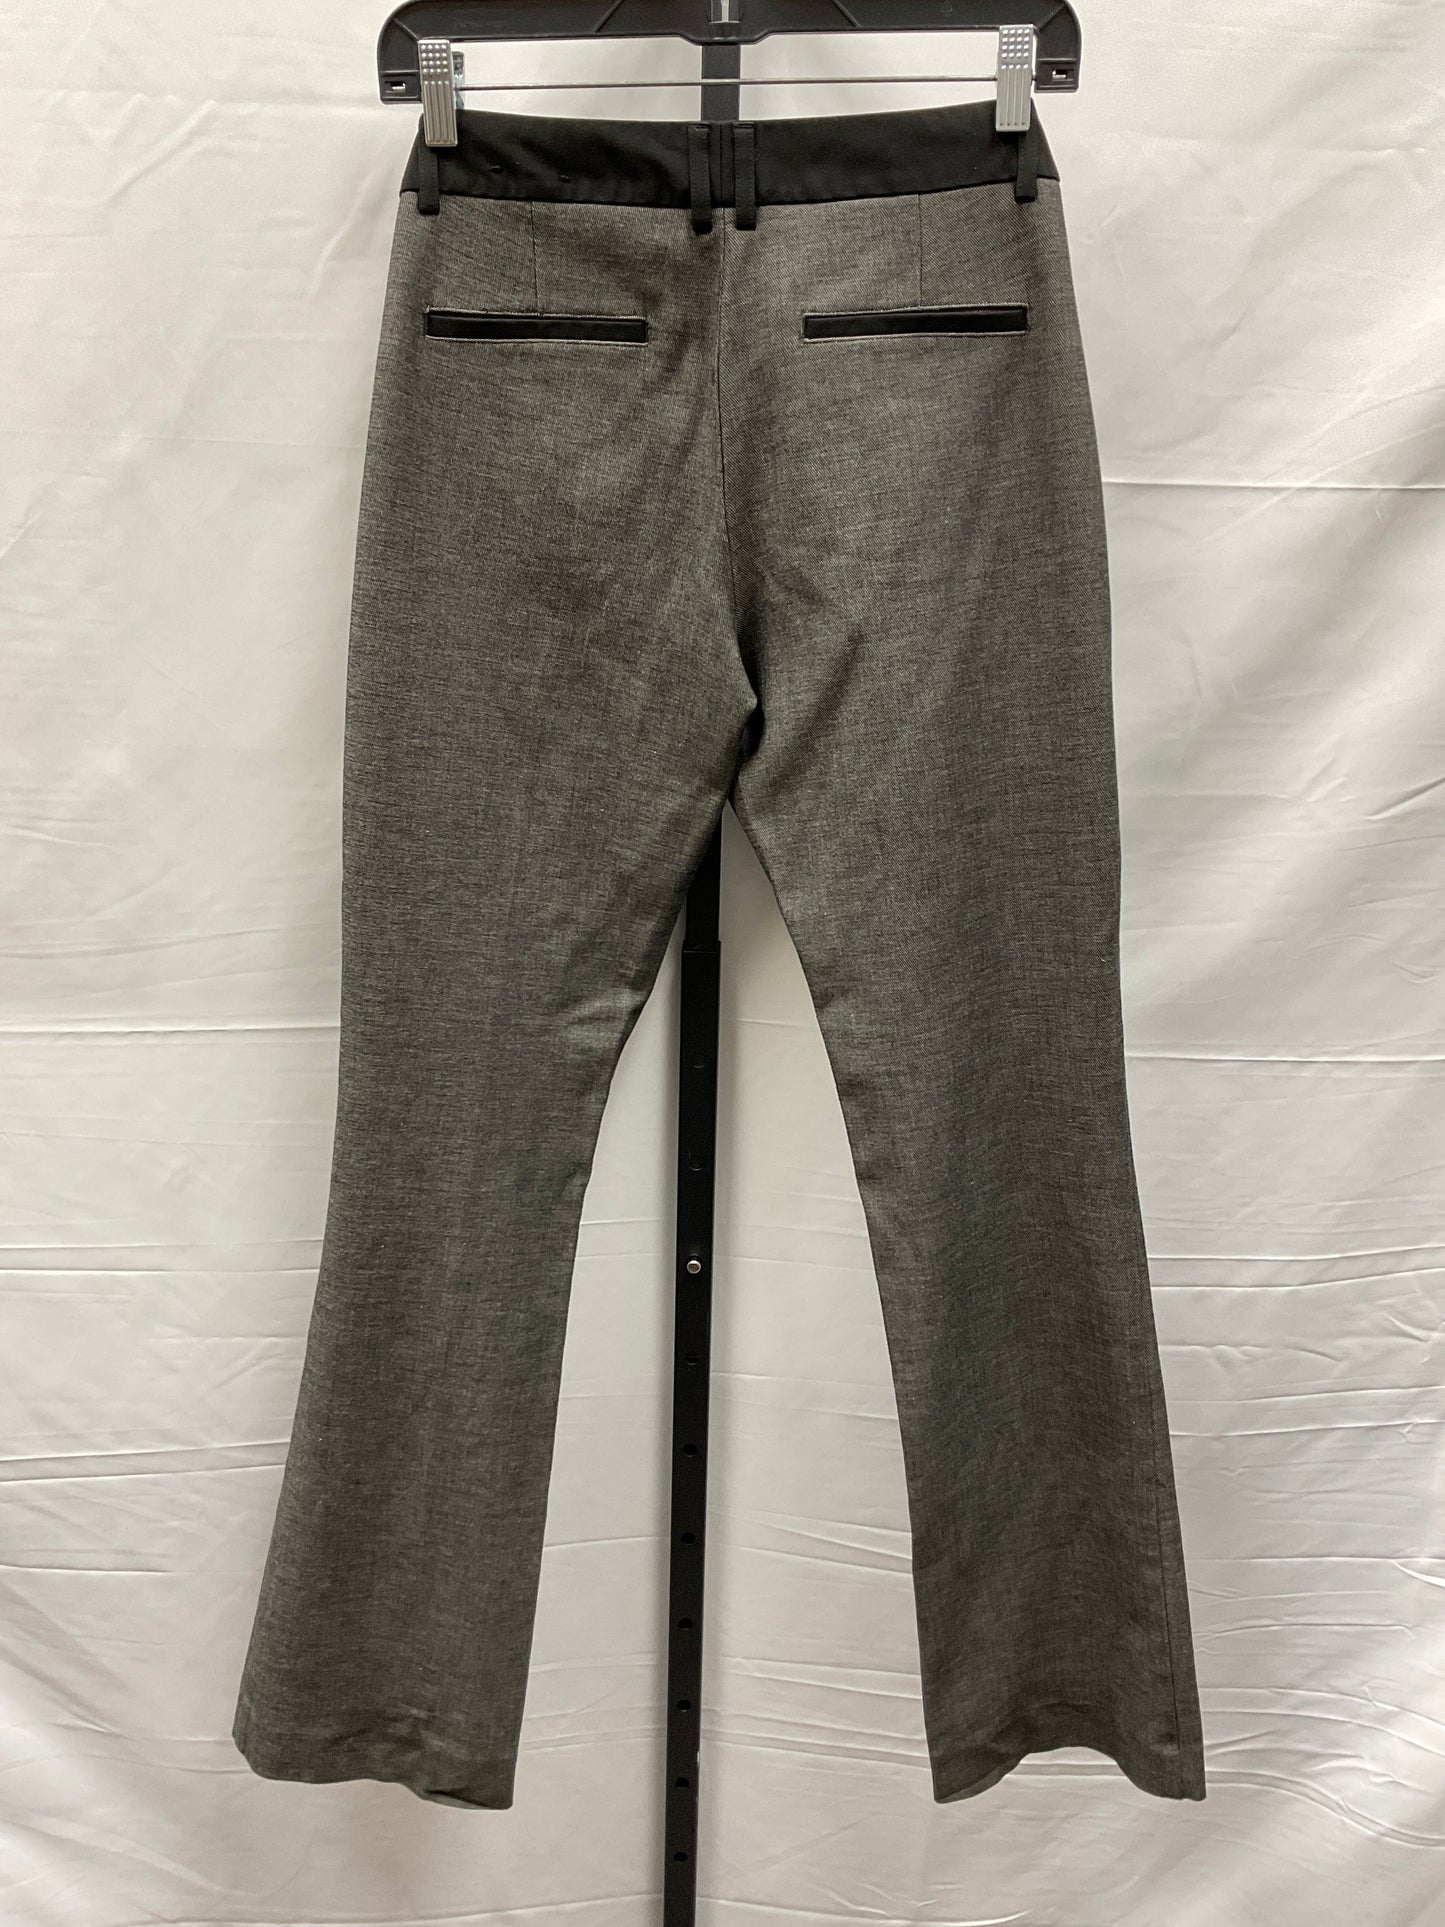 Grey Pants Dress Express, Size 8